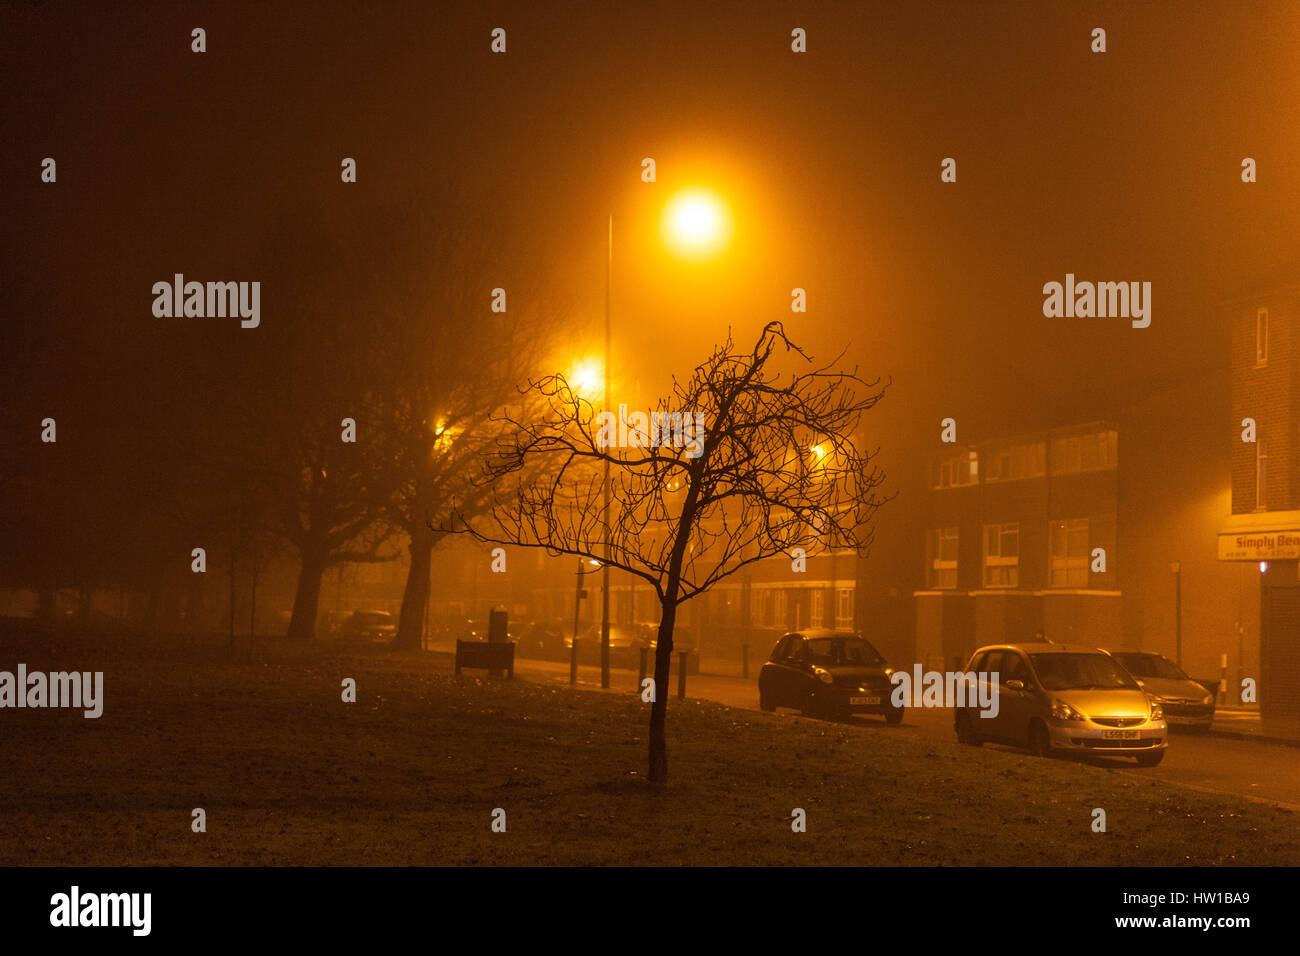 Bagliore giallo-ambra da luci di strada di vapore di sodio in una notte nebbiosa, Queensbury, Harrow, Londra nordoccidentale, Inghilterra, HA8 5NP, REGNO UNITO. Foto Stock